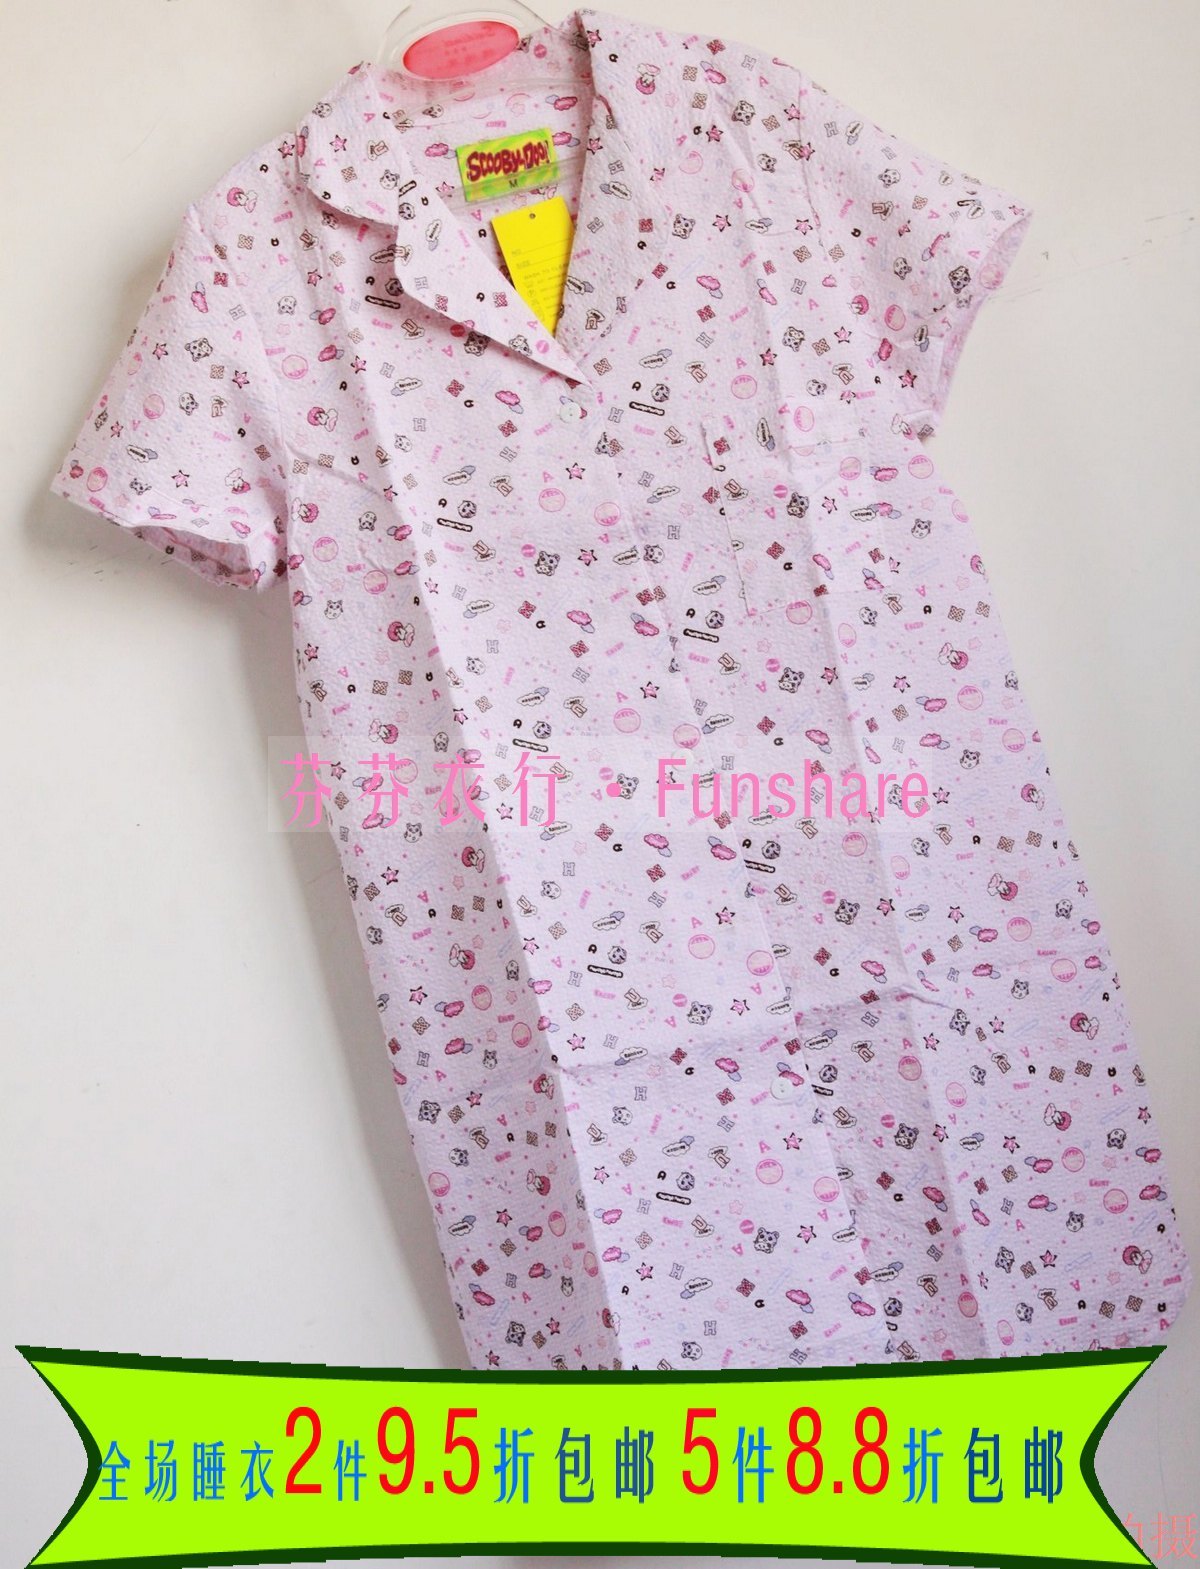 Sleepwear shirt Women short-sleeve dress sleepwear lounge 100% cotton cloth bubble yarn